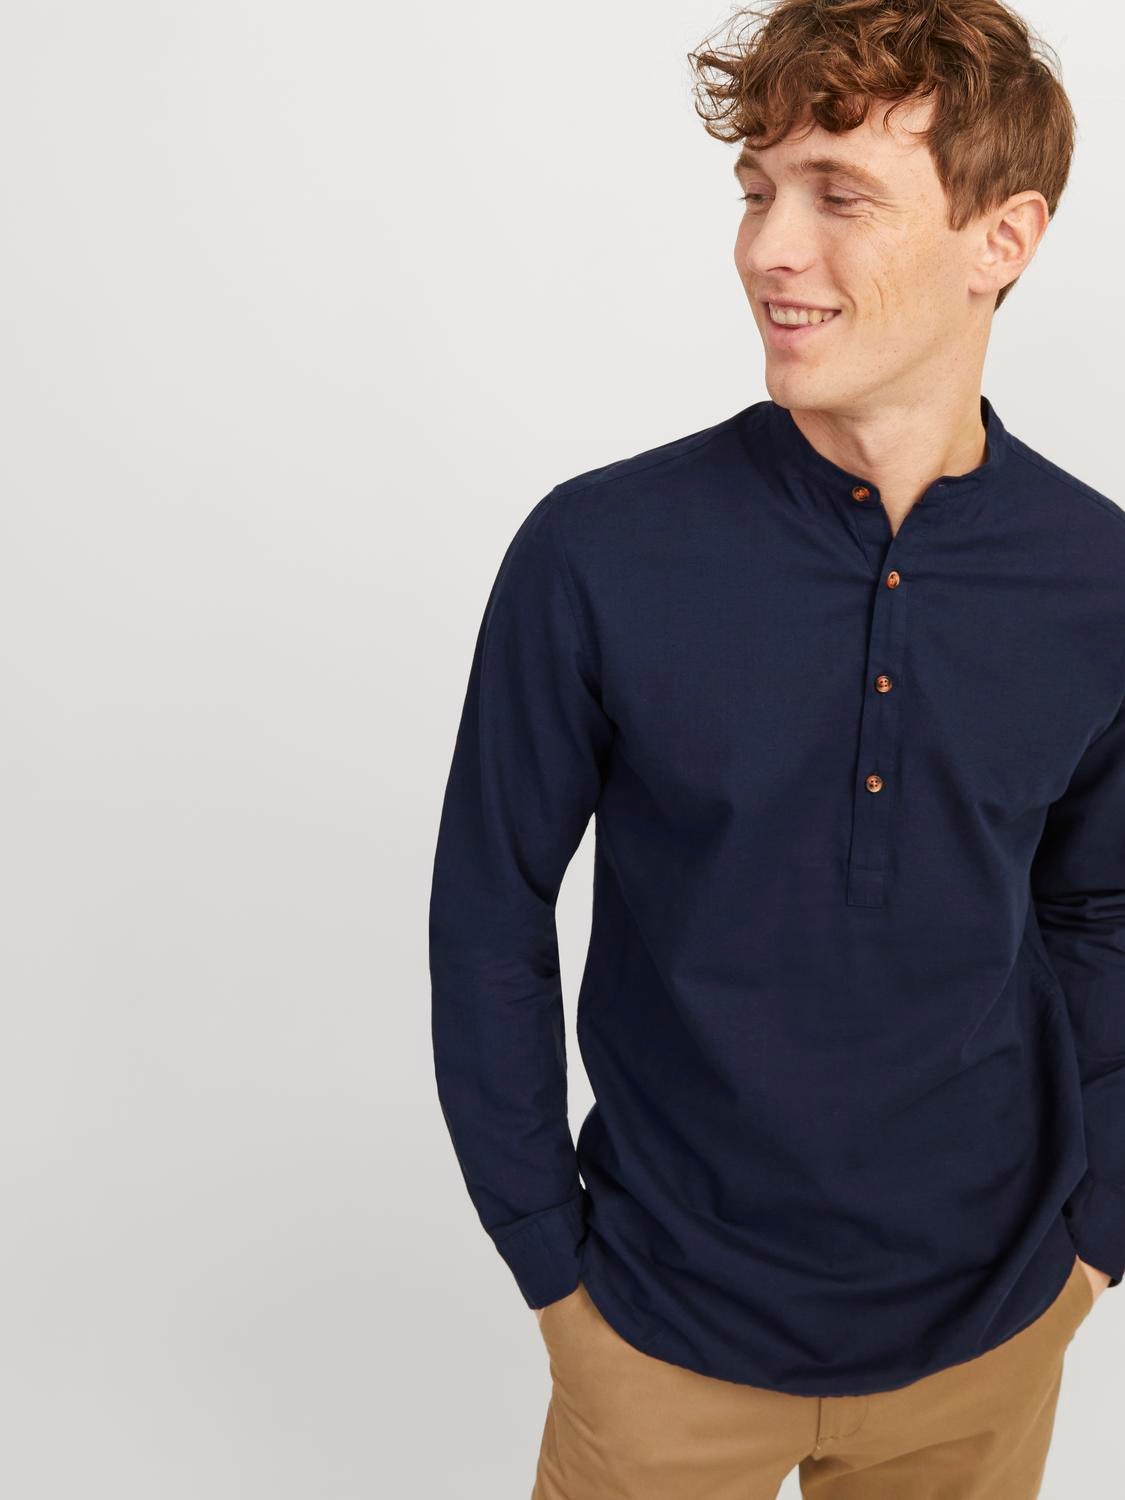 Jack & Jones Comfort Fit Shirt -Navy Blazer - 12248410